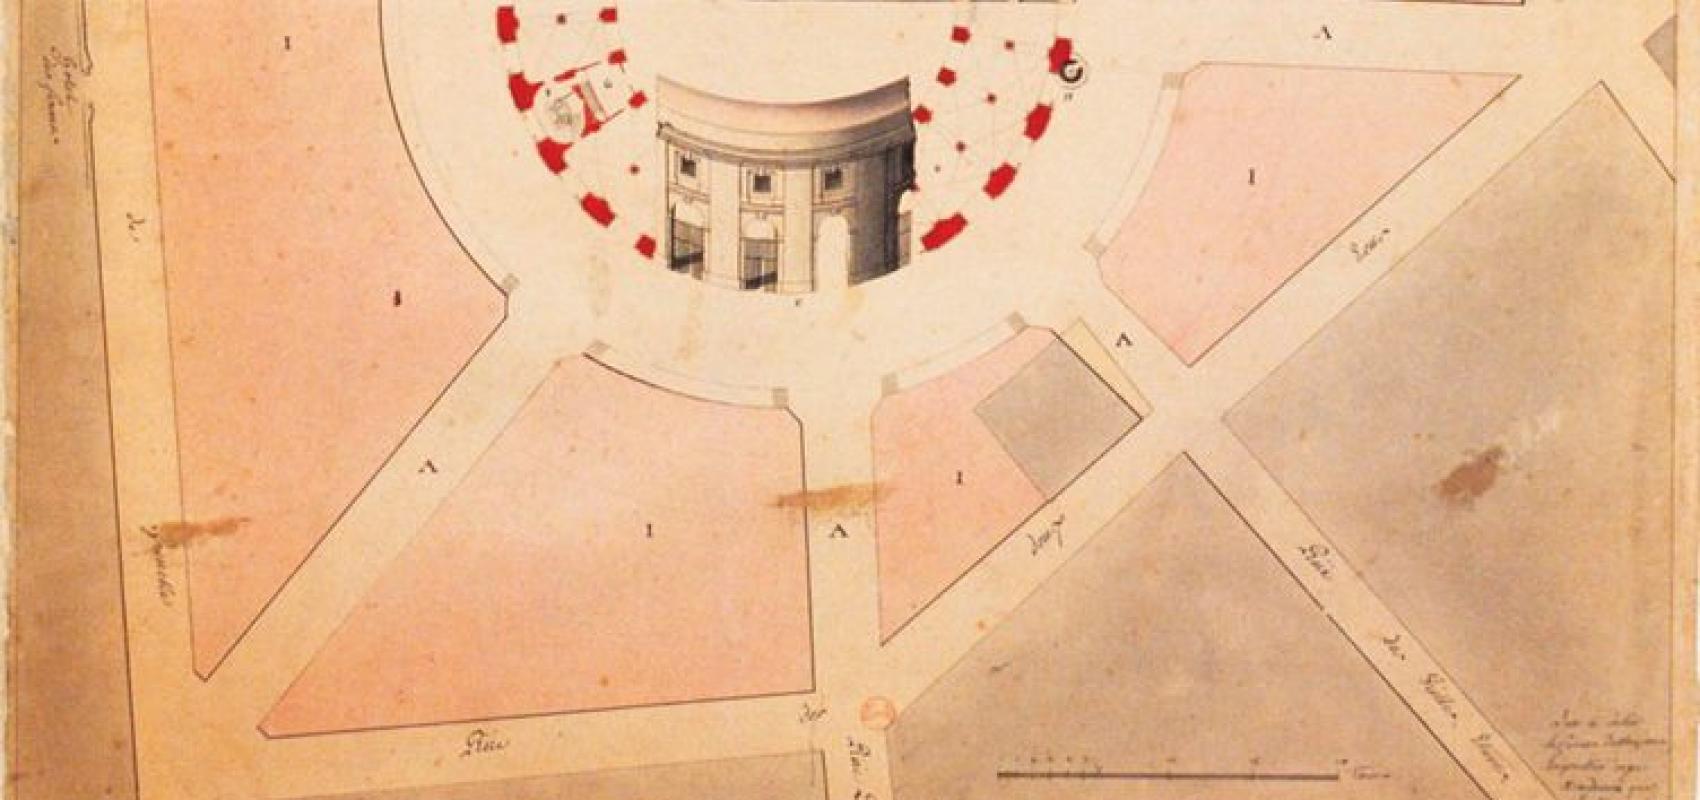 Plan de halle couverte et incombustible en l’emplacement de l’hotel de Soissons, dessin, vers 1763 -  - Nicolas Le Camus de Mézières (1721-1789) – BnF, département des Estampes et de la photographie